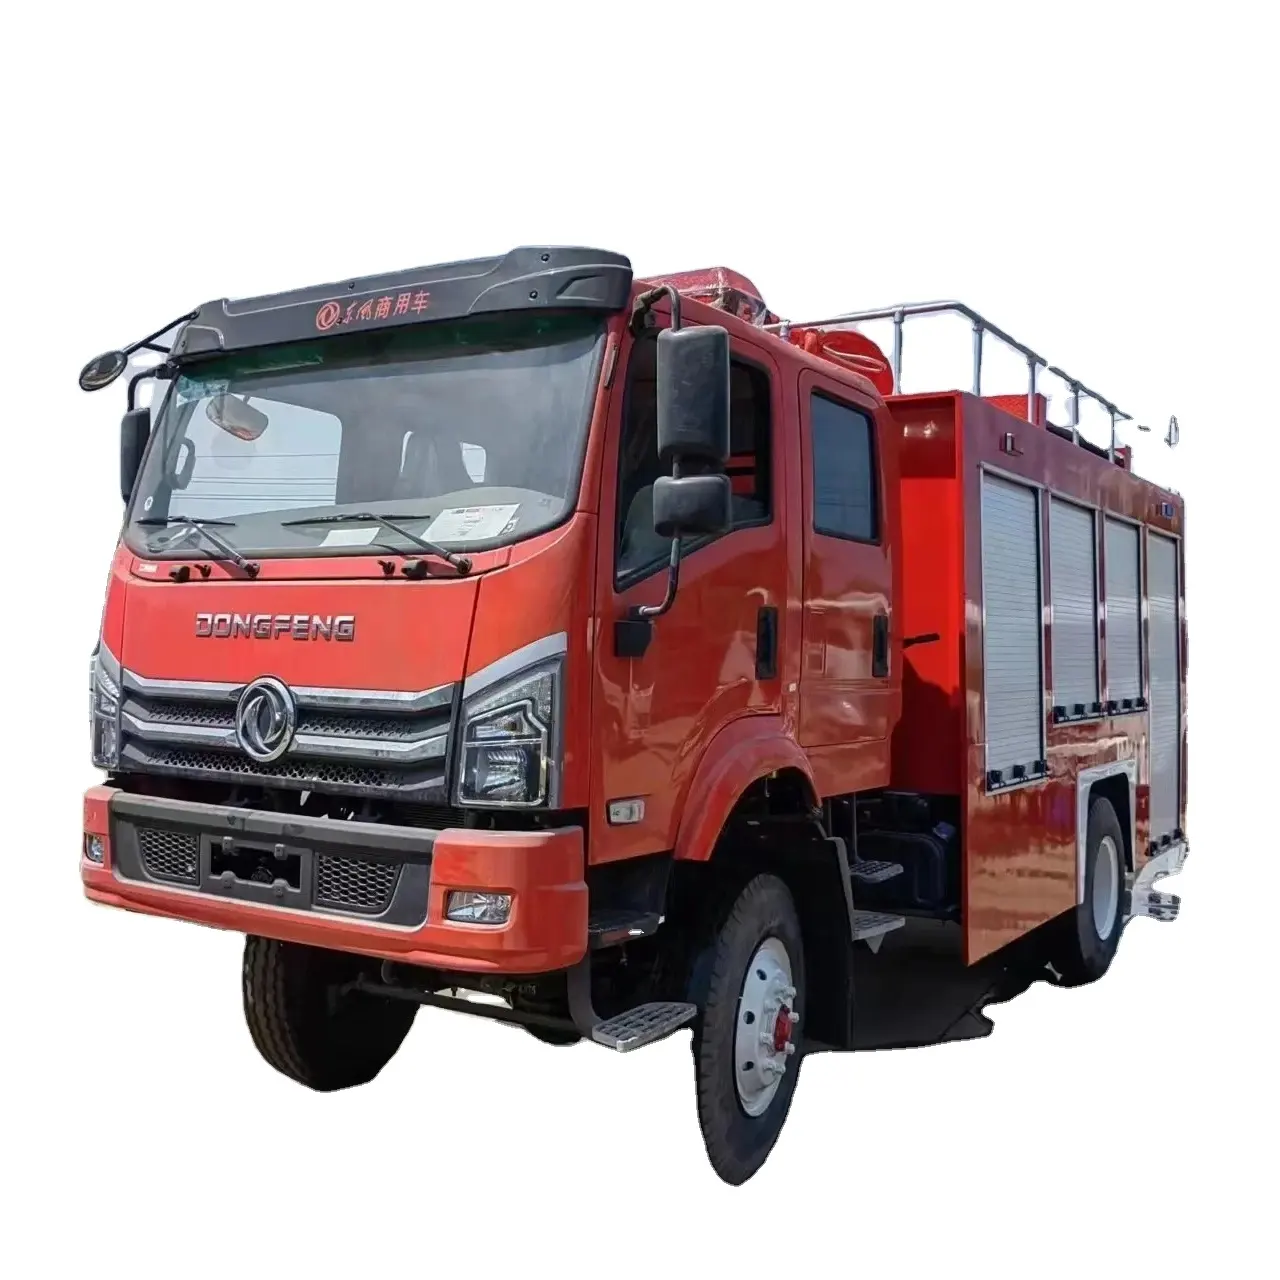 Camion pompier Dongfeng Il est principalement utilisé pour les opérations de lutte contre l'incendie et les missions de sauvetage d'urgence